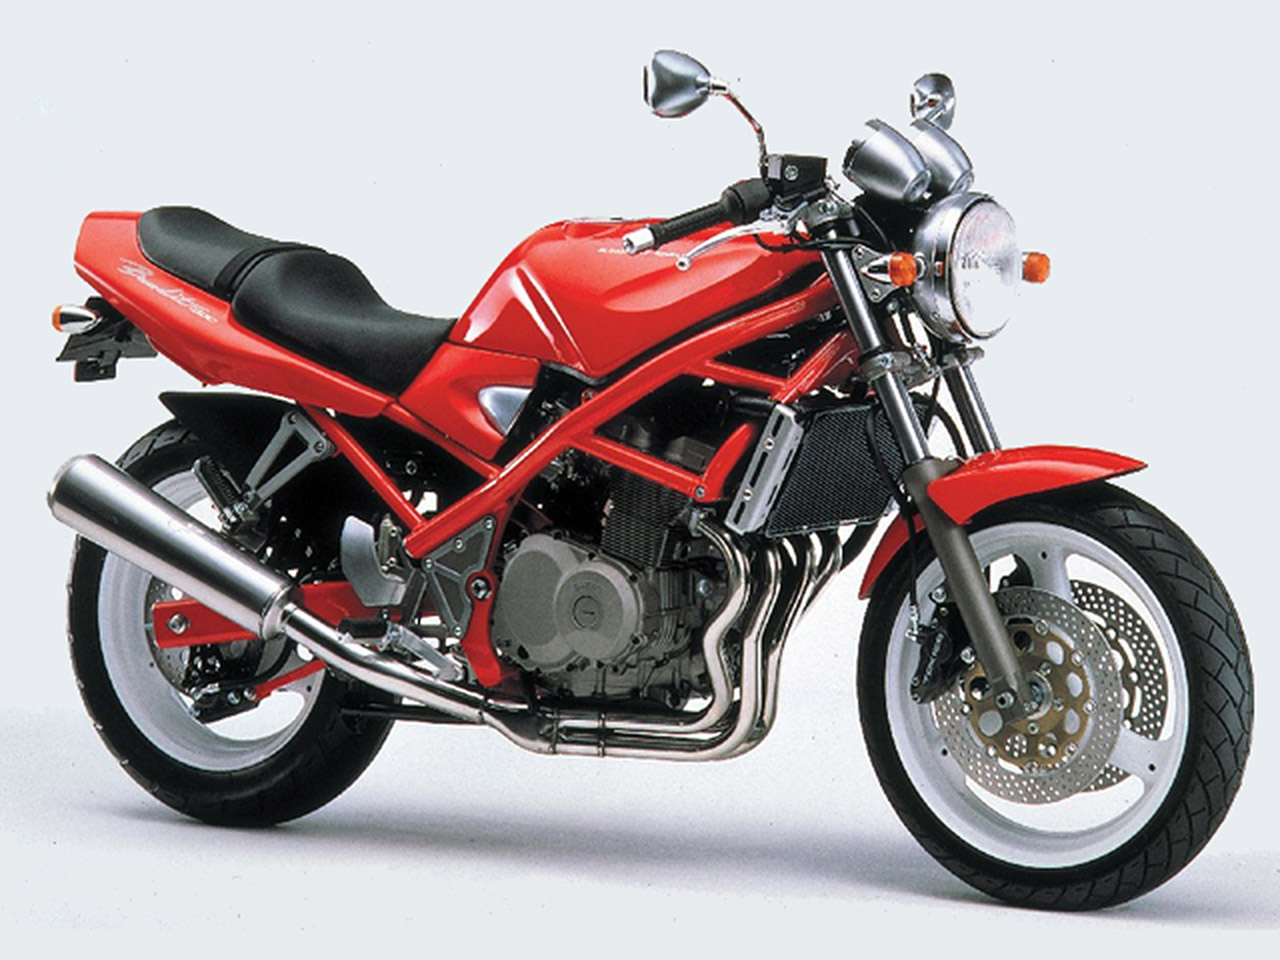 Moto del día: Suzuki 400 Bandit - RACER moto